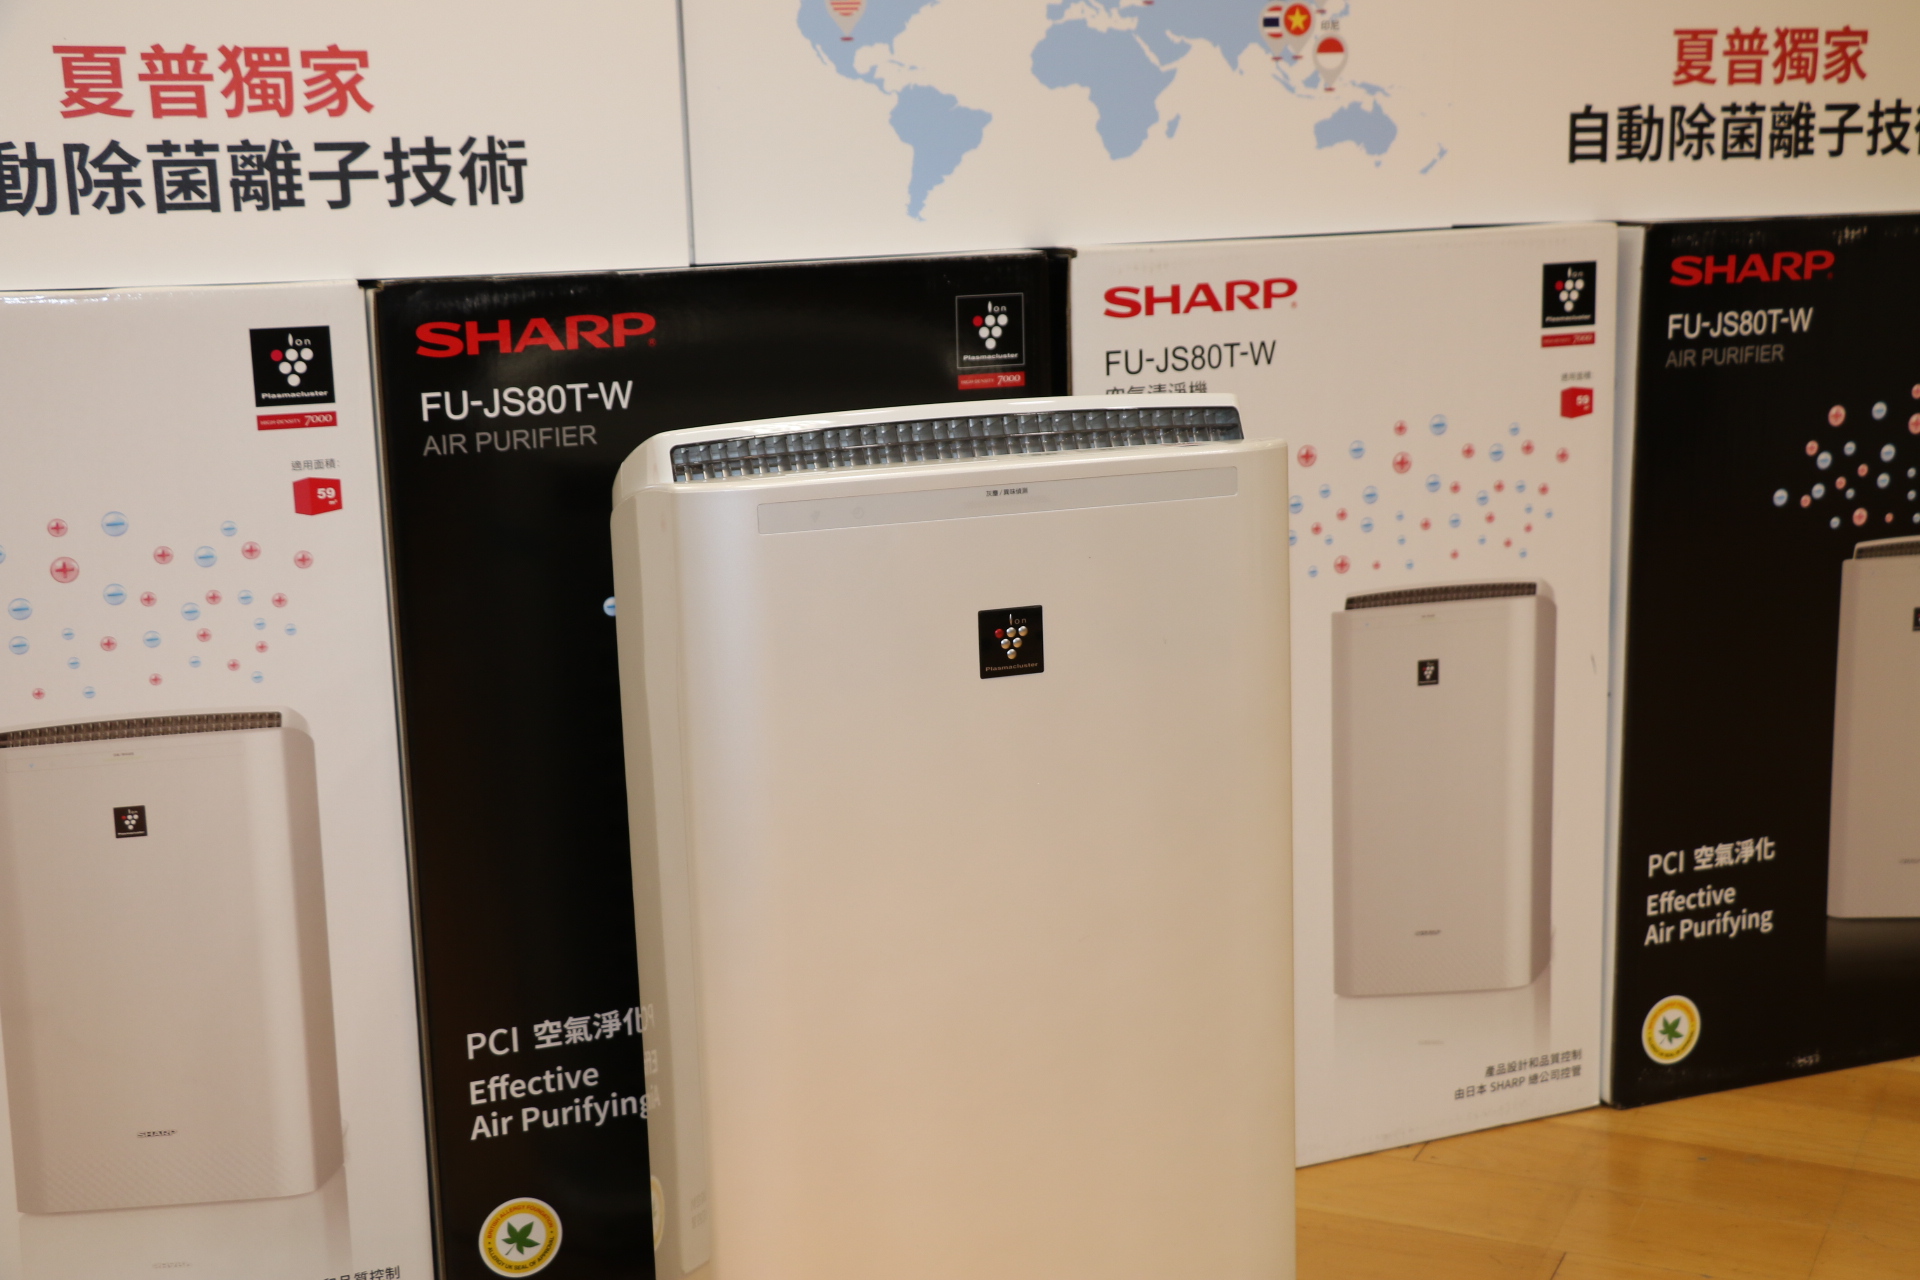 台灣夏普公司捐贈的自動除菌離子空氣清淨機可有效除去空氣中的黴菌、細菌